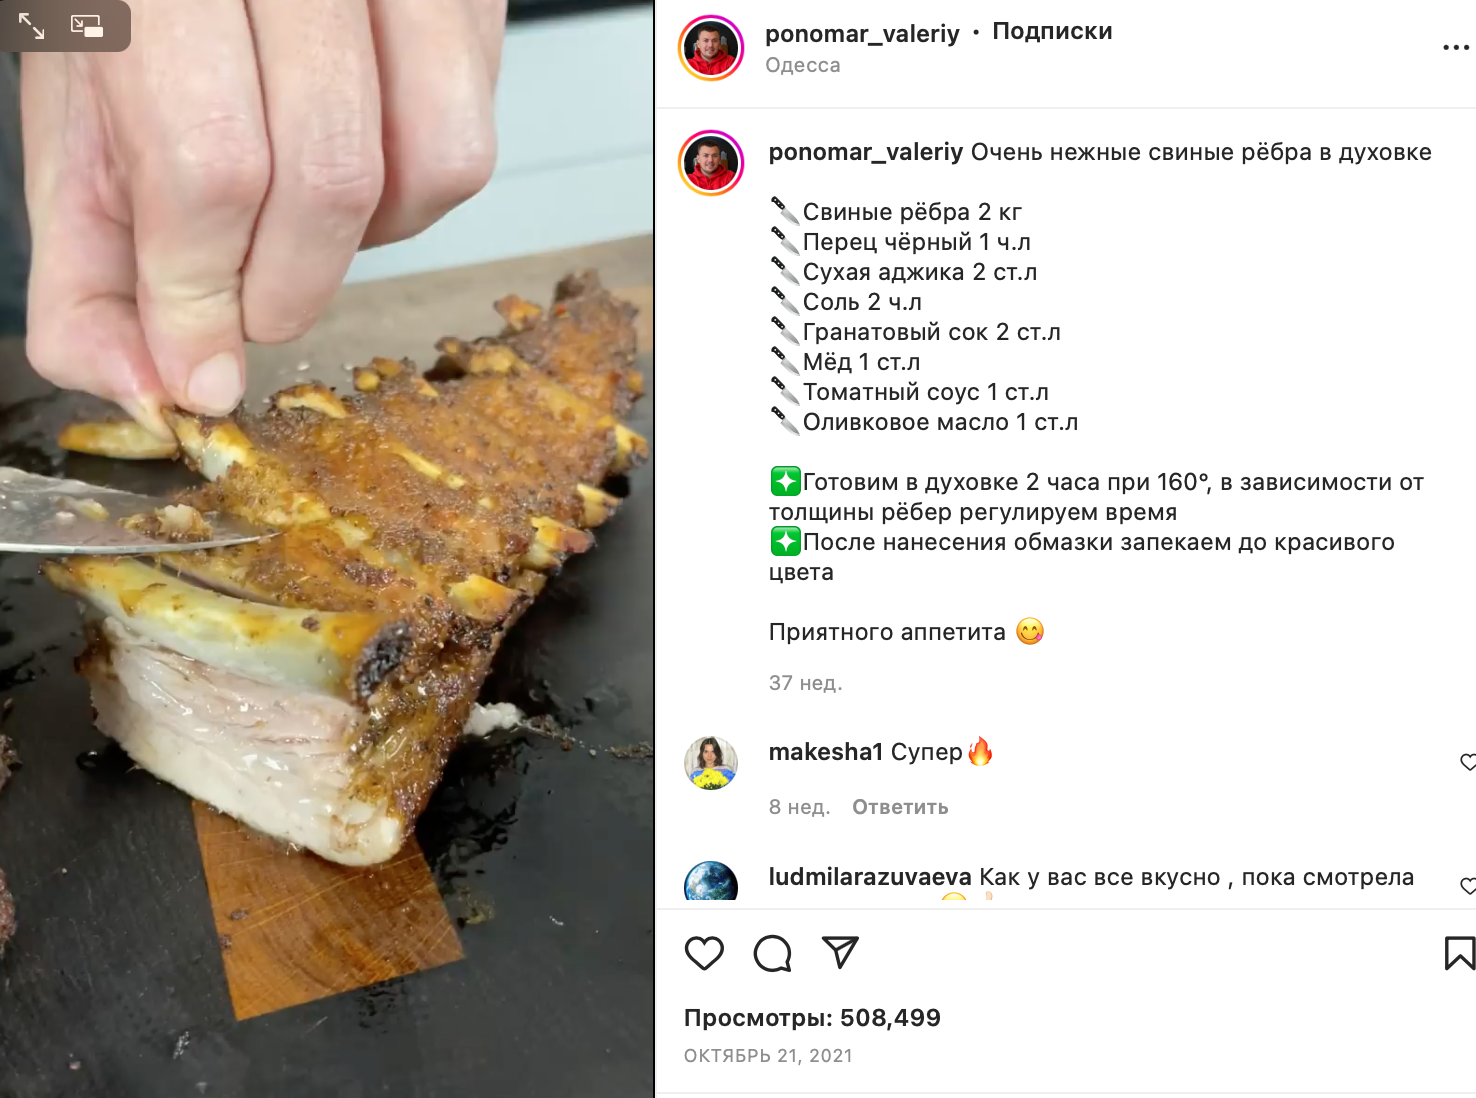 Recipe for delicious pork ribs